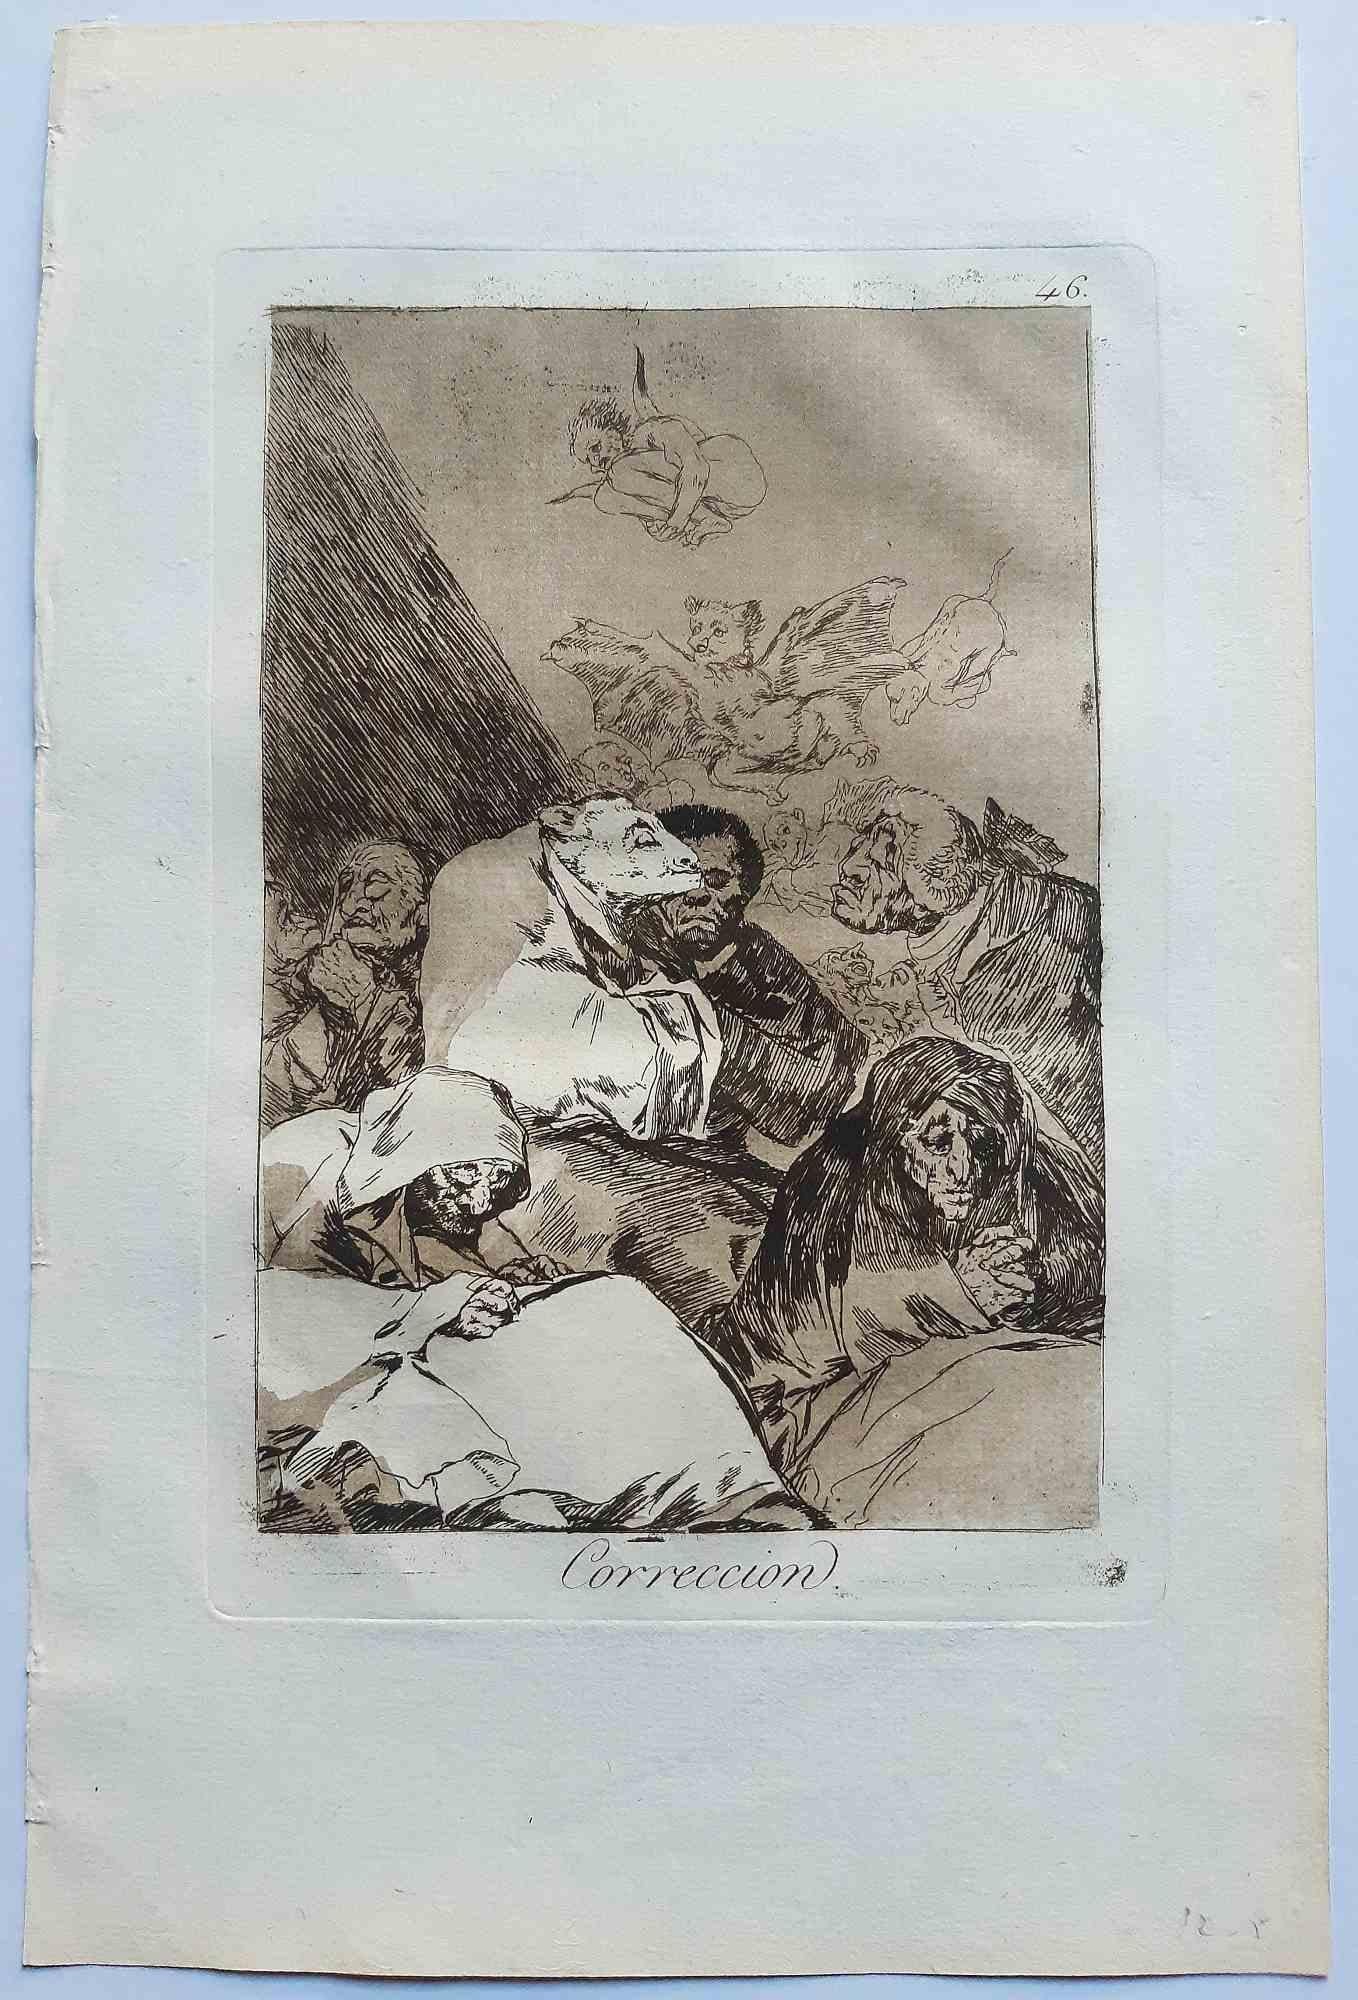 Correcion de Los Caprichos est une œuvre d'art originale réalisée par l'artiste Francisco Goya et publiée pour la première fois en 1799.

Eau-forte et aquatinte sur papier.

Cette gravure fait partie de la première édition de "Los Caprichos" publiée